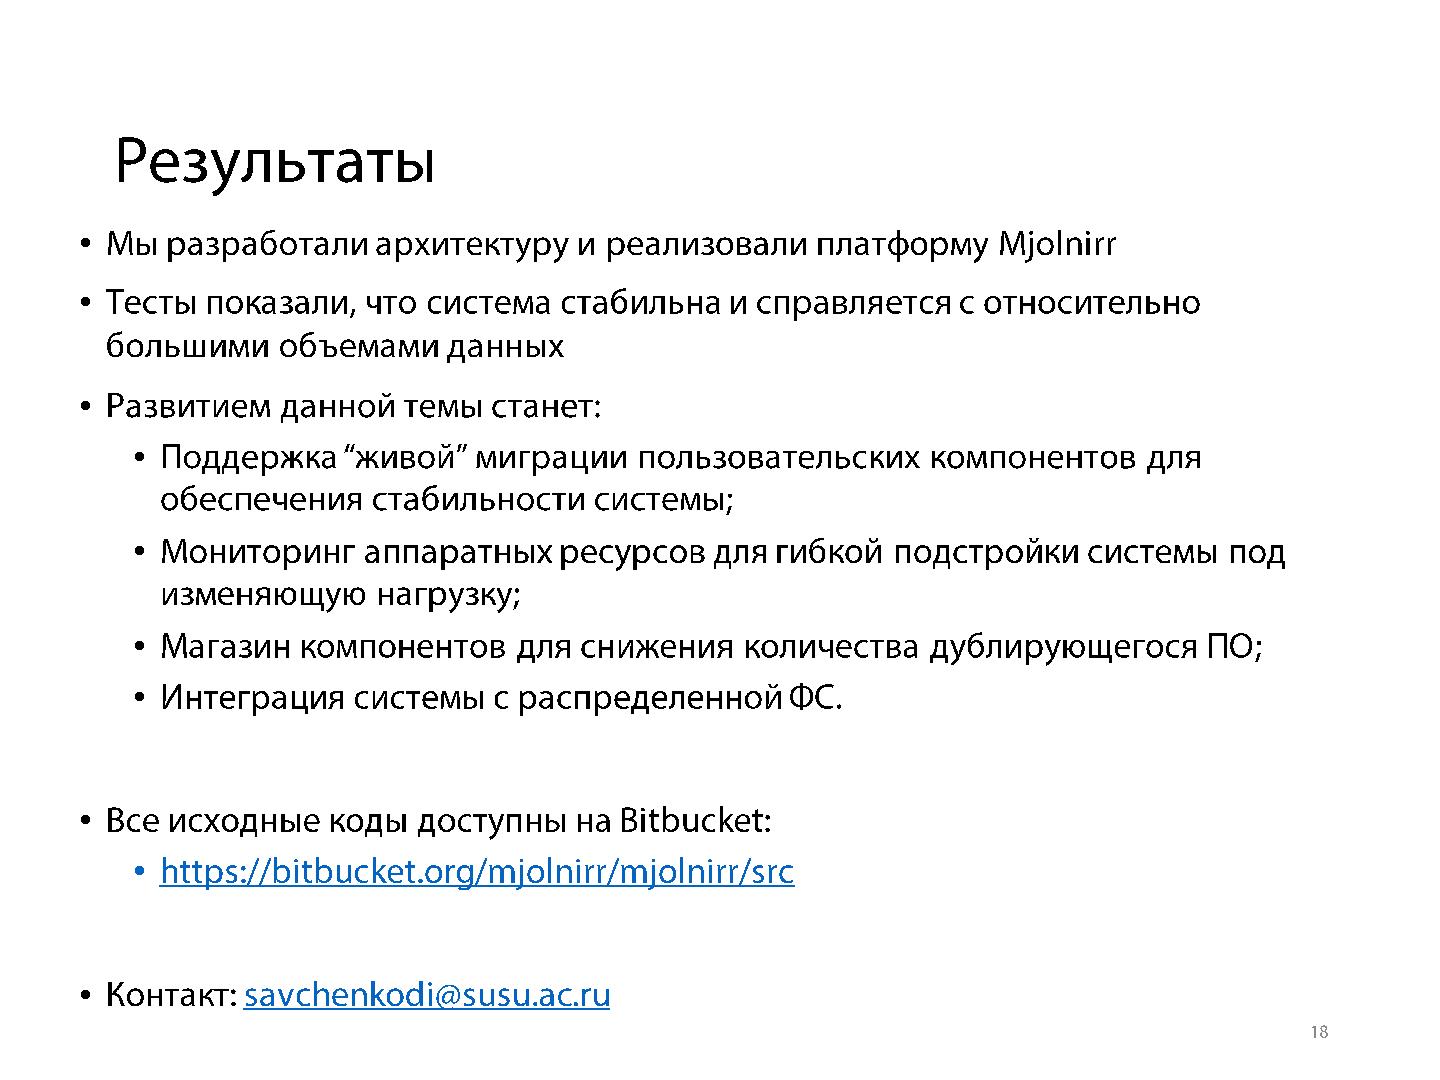 Файл:Компонентно-ориентированный подход для создания облачных приложений на примере платформы Mjolnirr (Дмитрий Савченко, SECR-2014).pdf